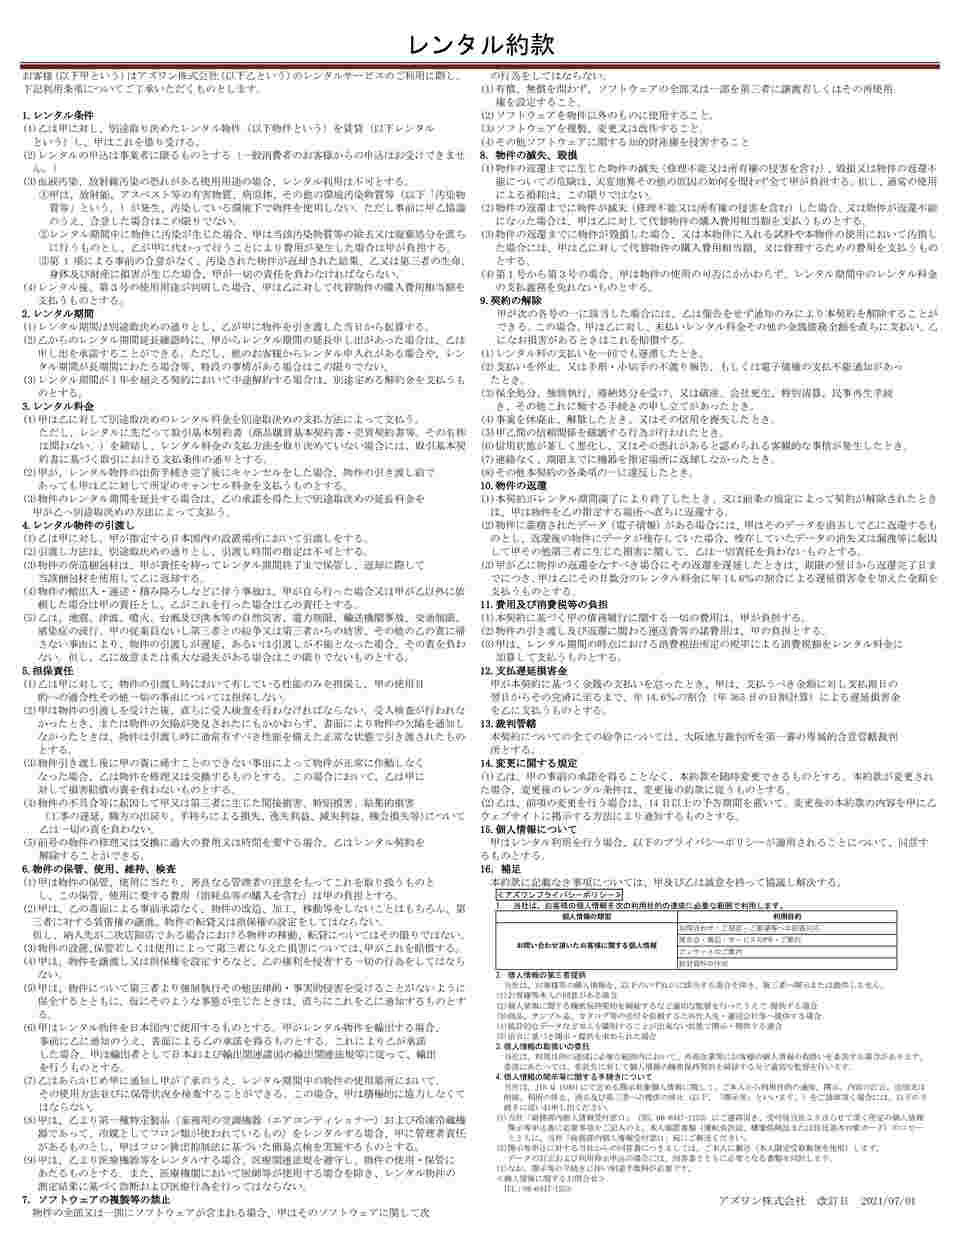 2-8021-31-60 スリム型薬用保冷庫 レンタル5日 FMS-124GS 【AXEL 